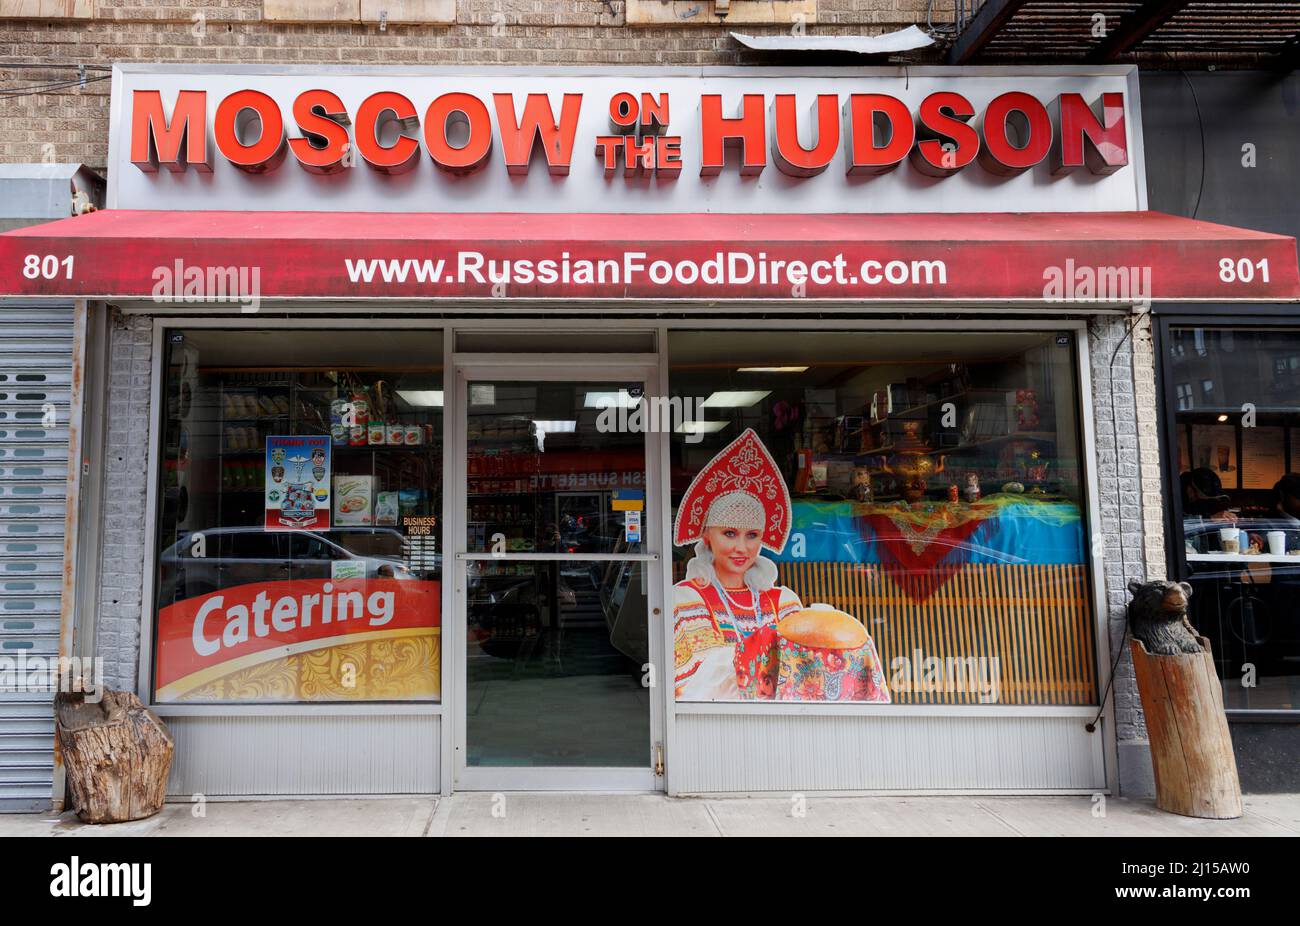 Moscou on the Hudson, un magasin d'alimentation russe situé au 181st St. Dans la section Washington Heights de Northern Manhattan, New York Banque D'Images